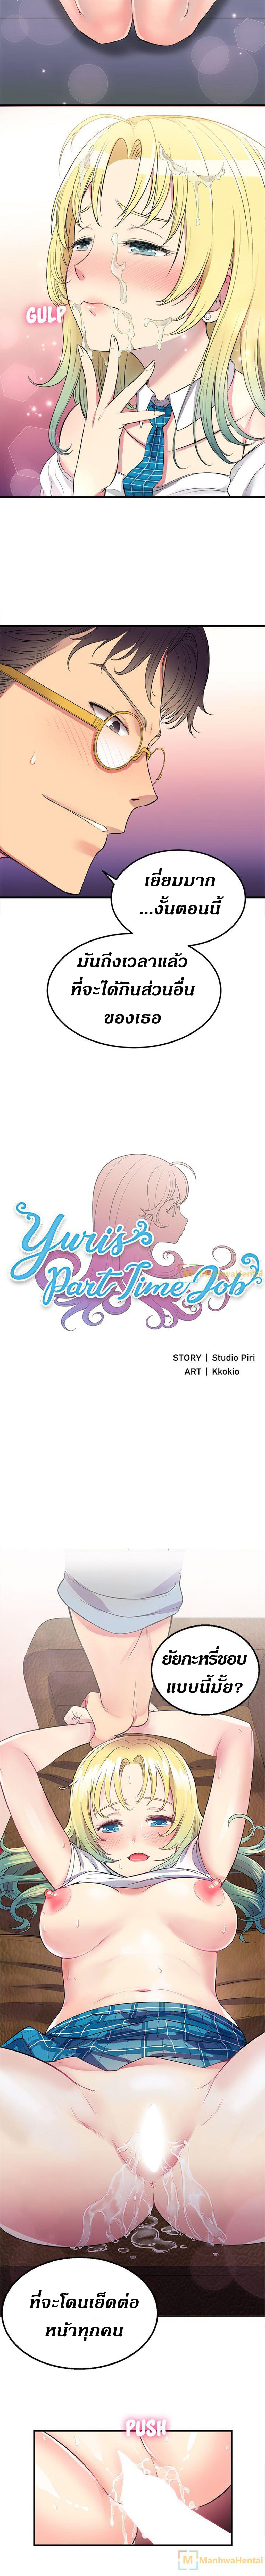 yuri's part time job 2 (8)